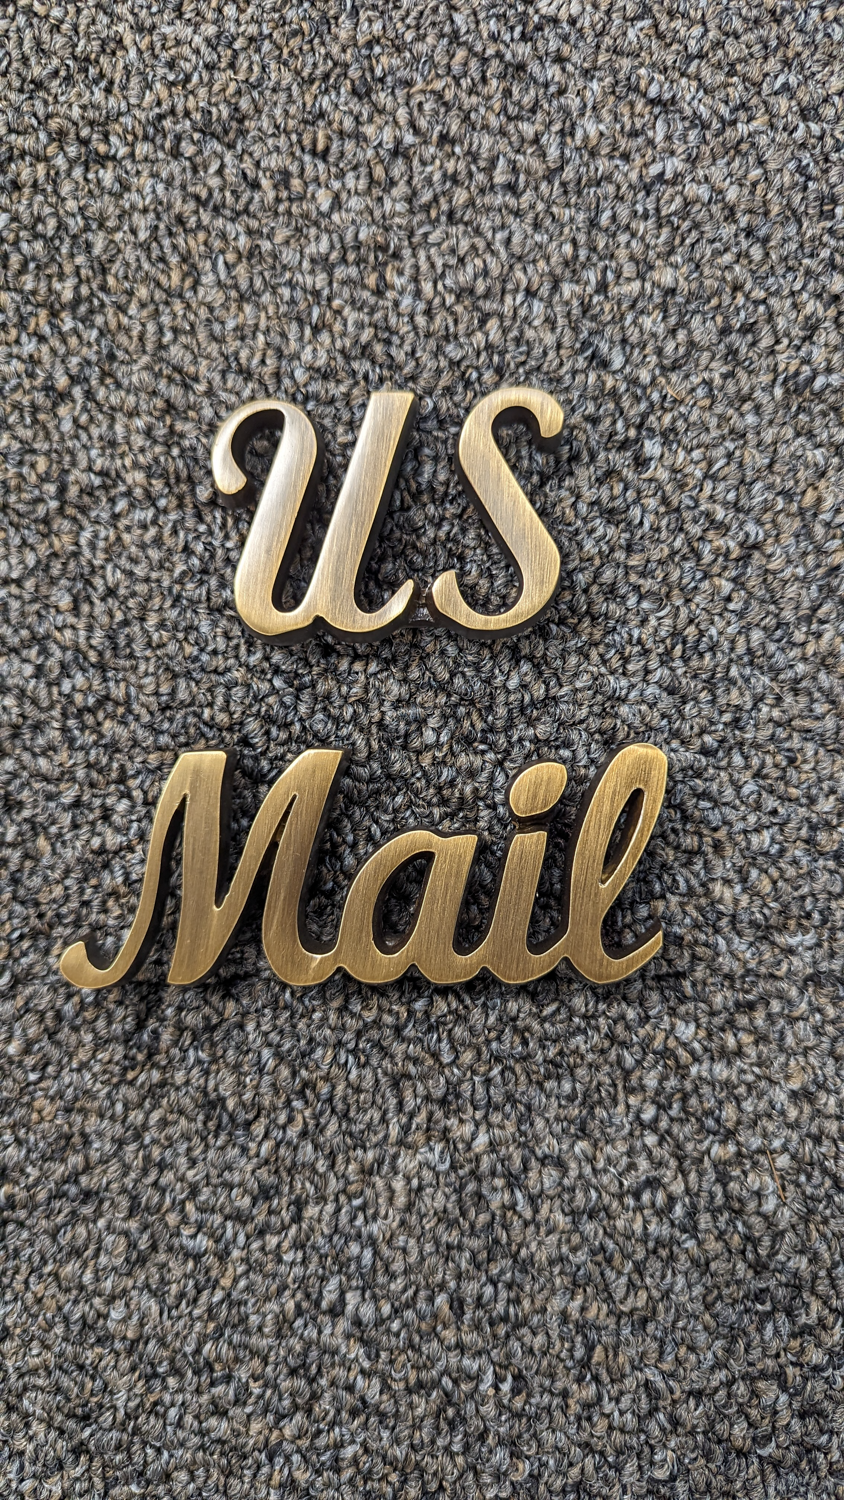 US Mail Signature Door Accent